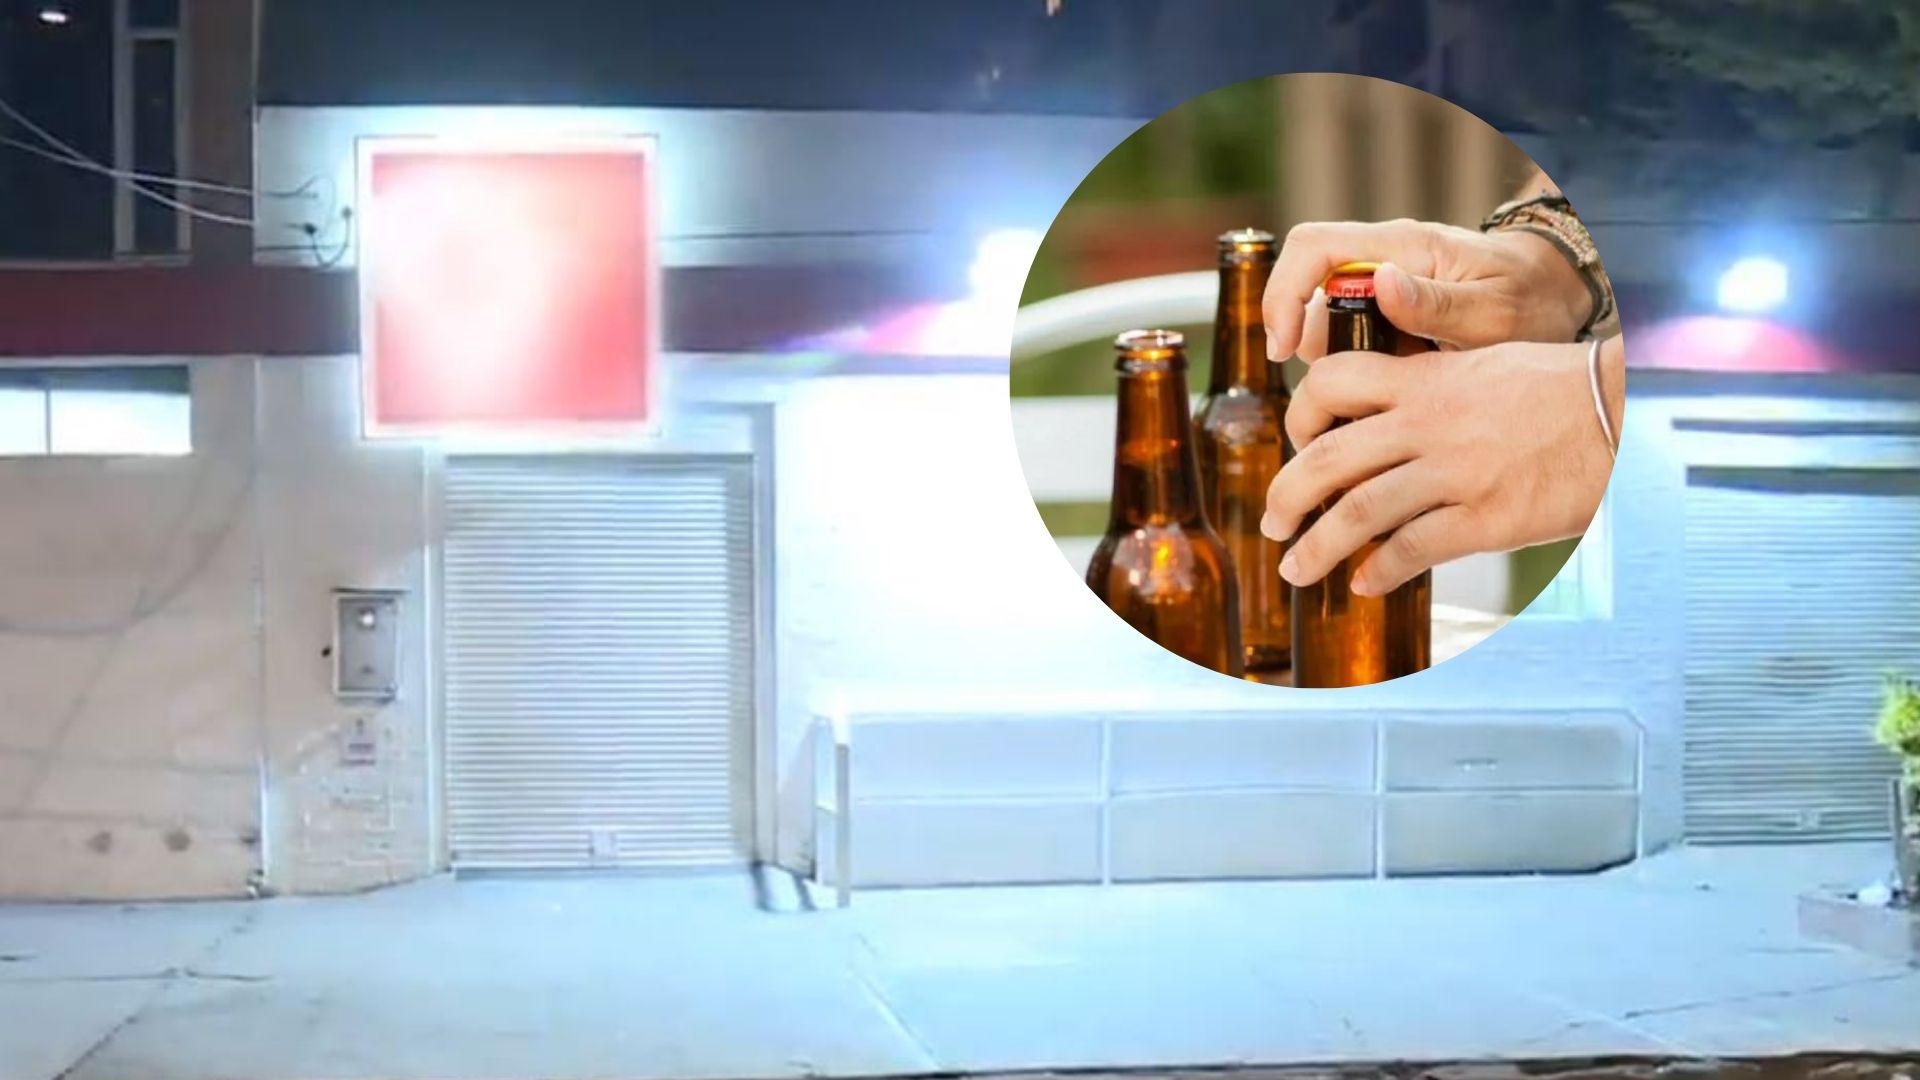 Foto de almacén y cervezas por muerte de hombre que se robó six pack